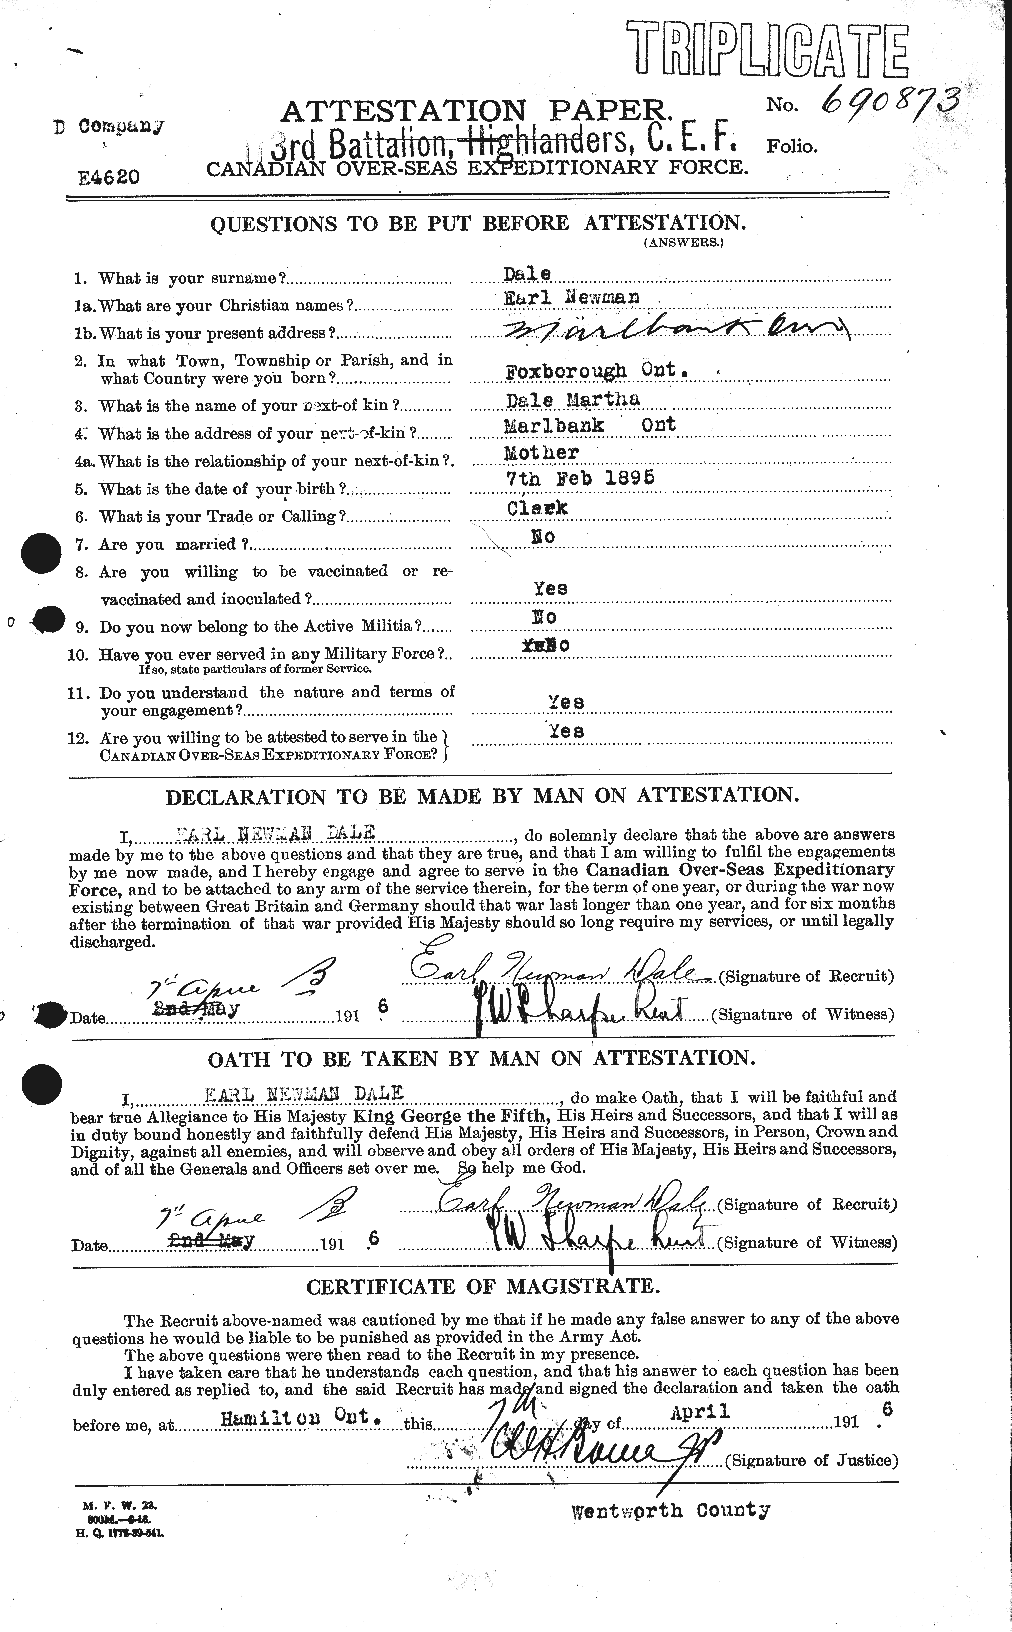 Dossiers du Personnel de la Première Guerre mondiale - CEC 279331a